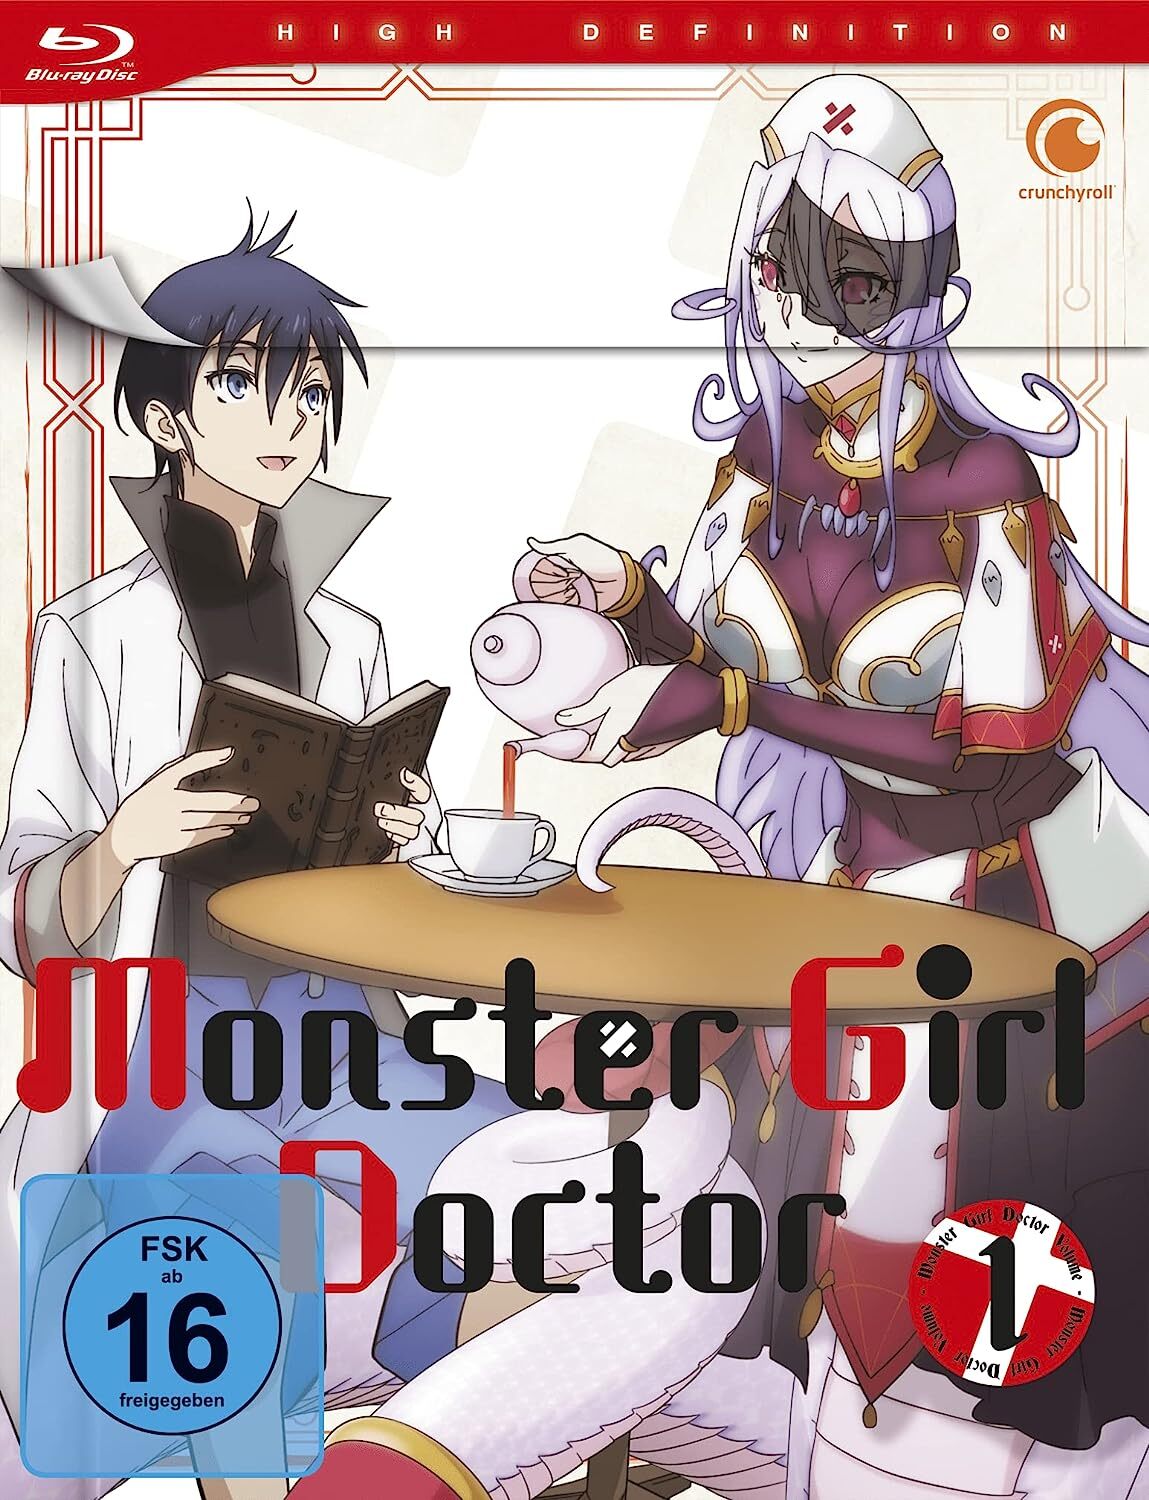 Monster Girl Doctor em português brasileiro - Crunchyroll